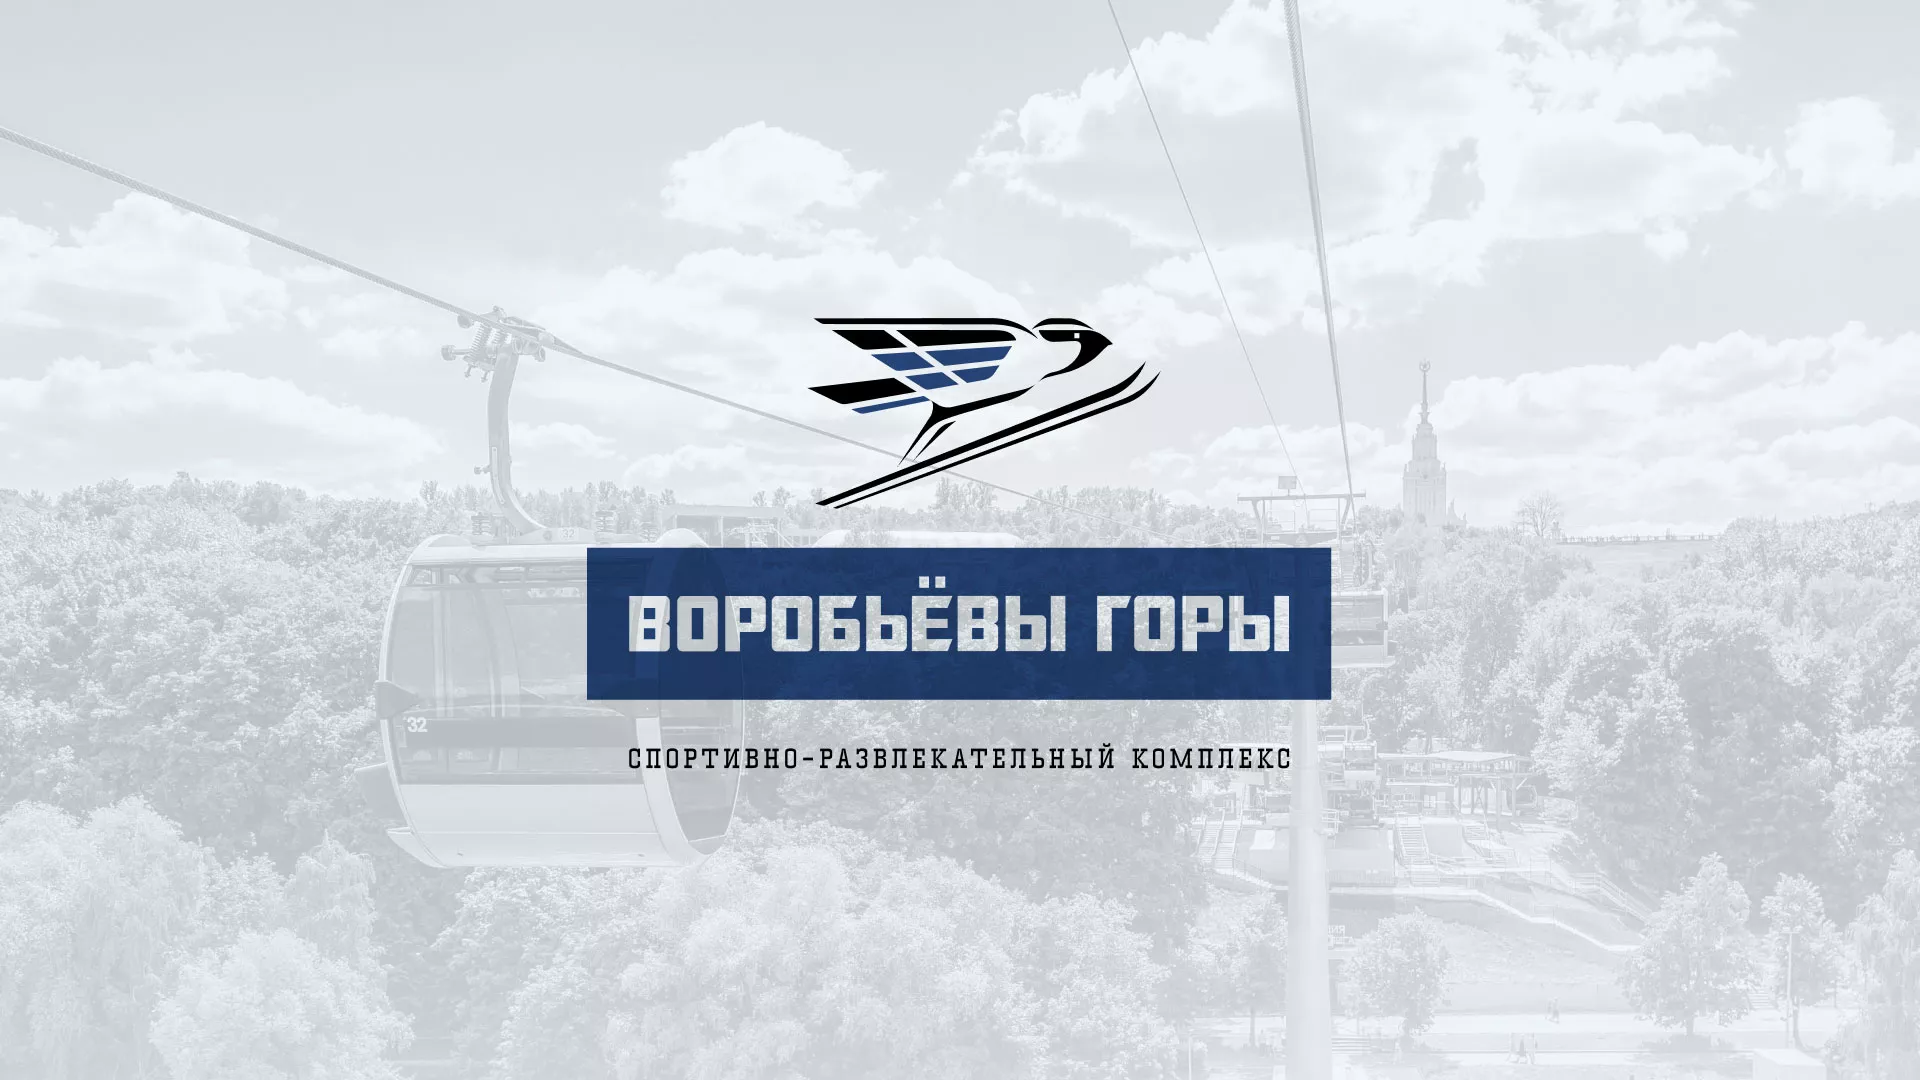 Разработка сайта в Михайловке для спортивно-развлекательного комплекса «Воробьёвы горы»